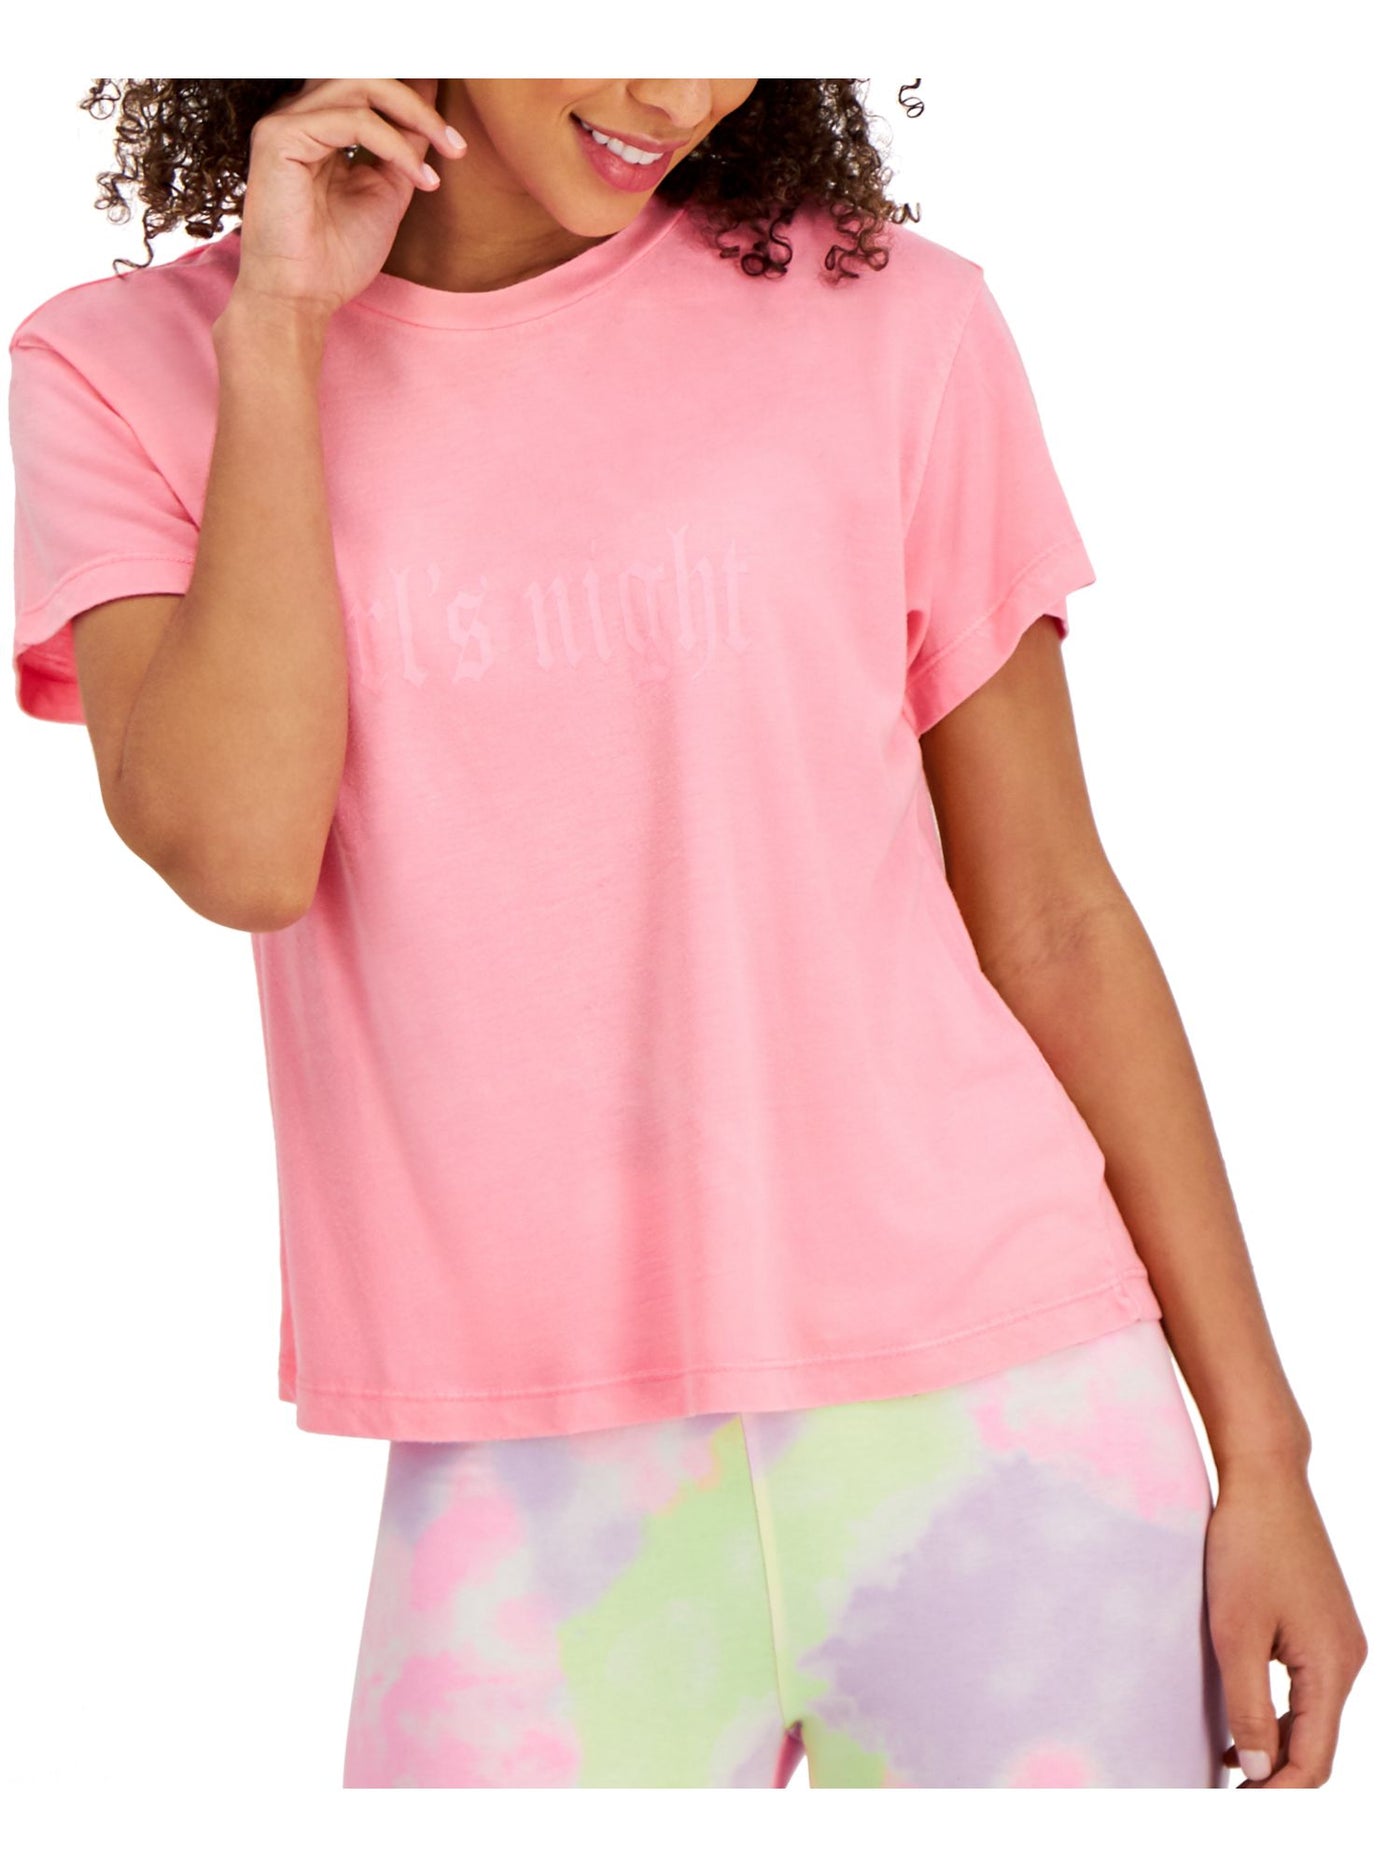 JENNI Intimates Pink Sleep Shirt Pajama Top XS